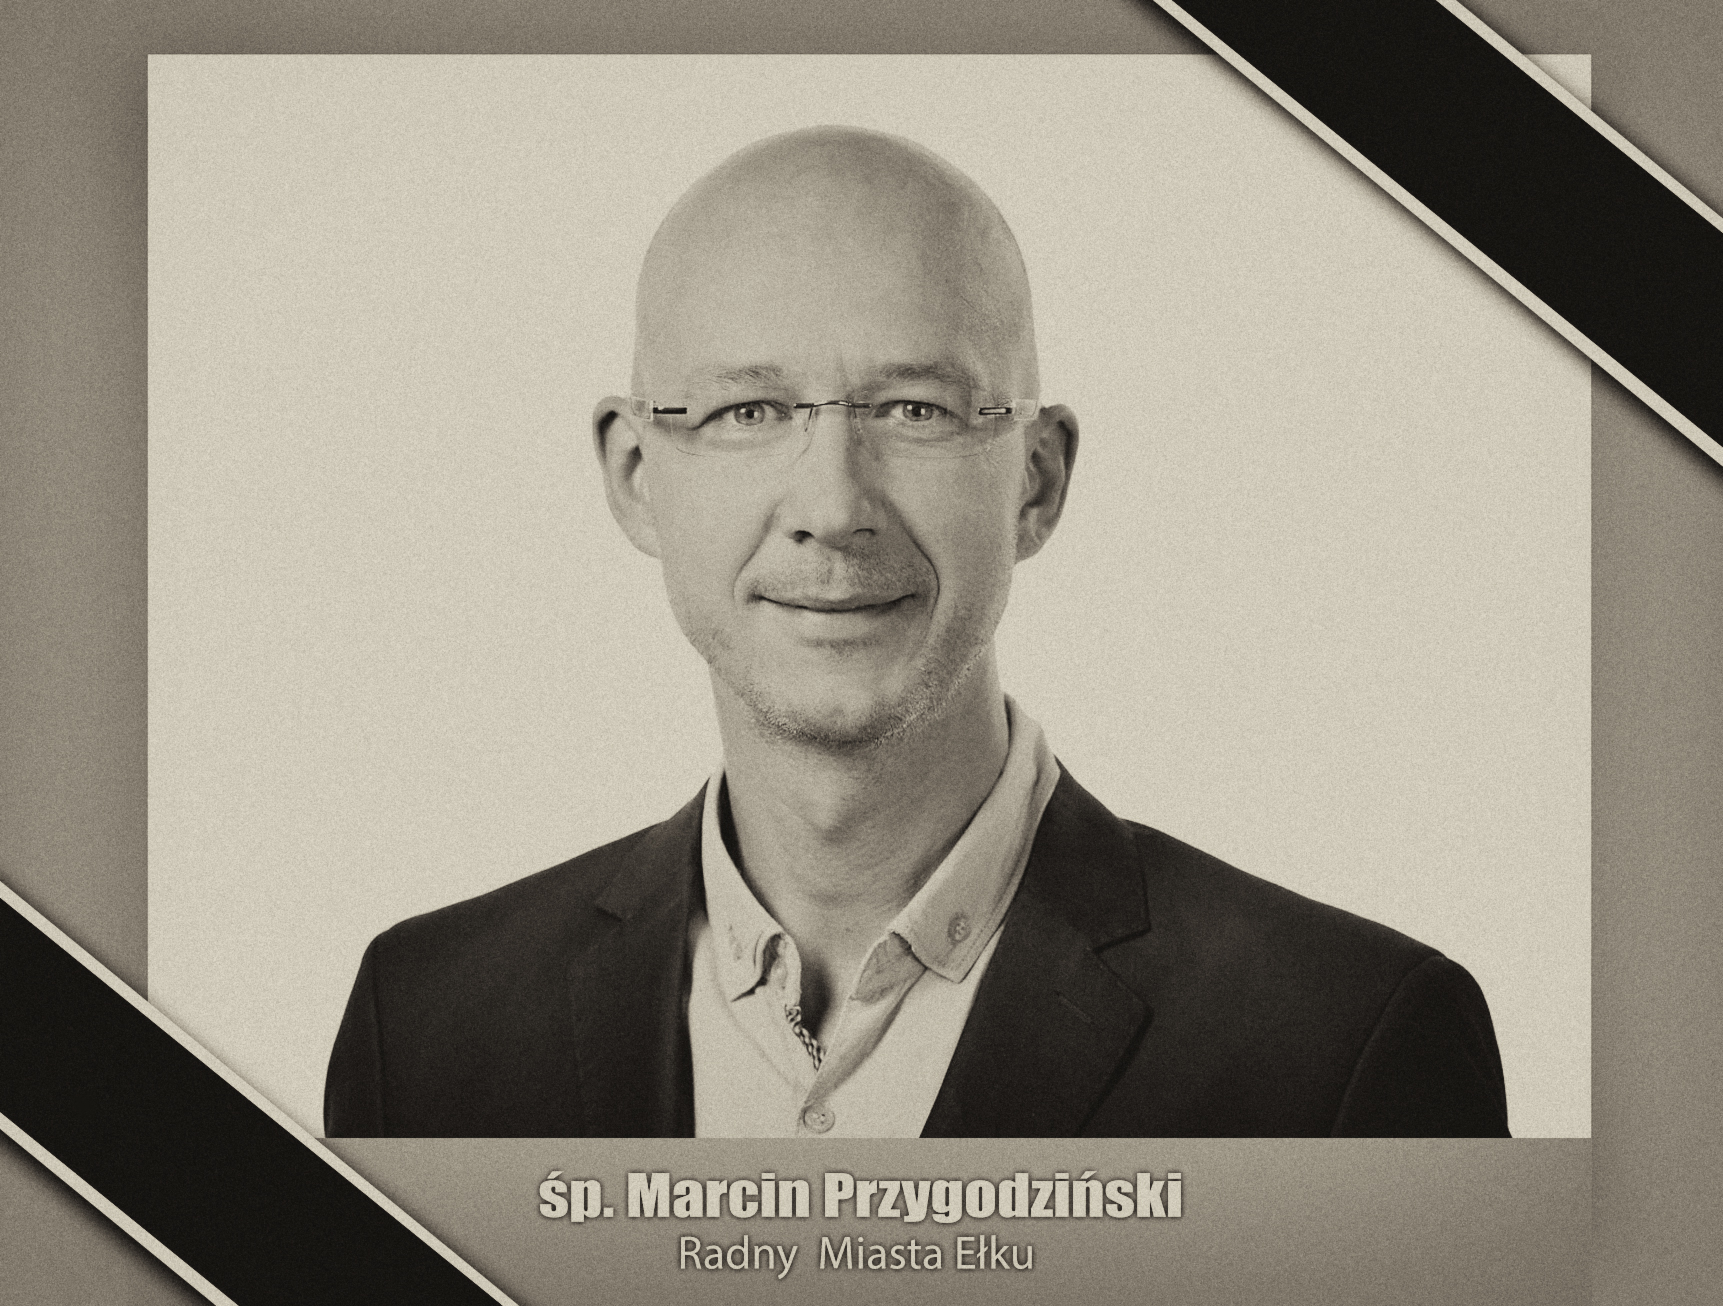 Marcin Przygodziński is gone